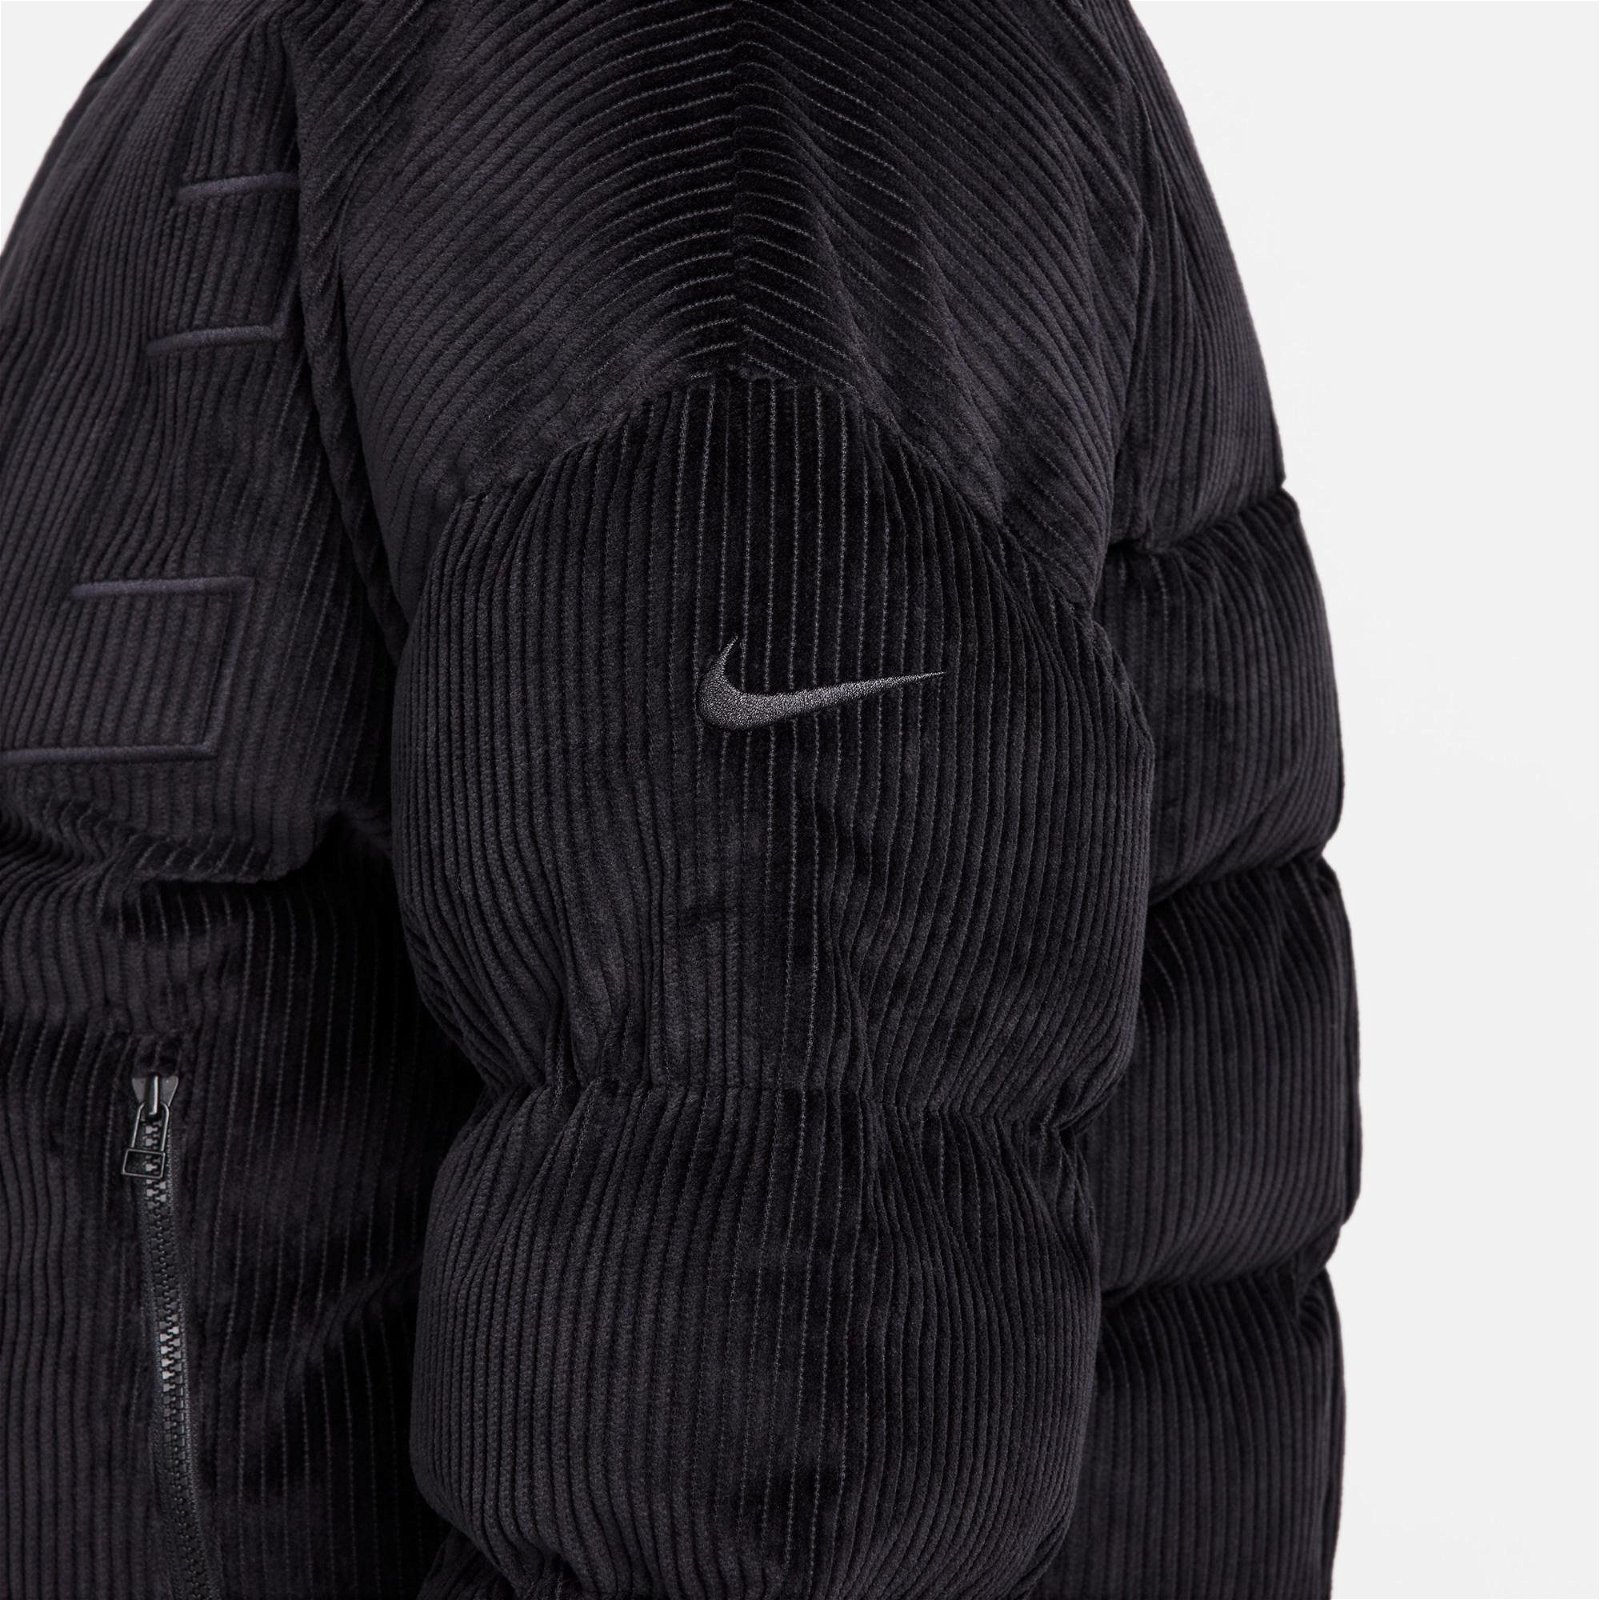 Nike Sportswear Essential Prima Kadın Siyah Ceket